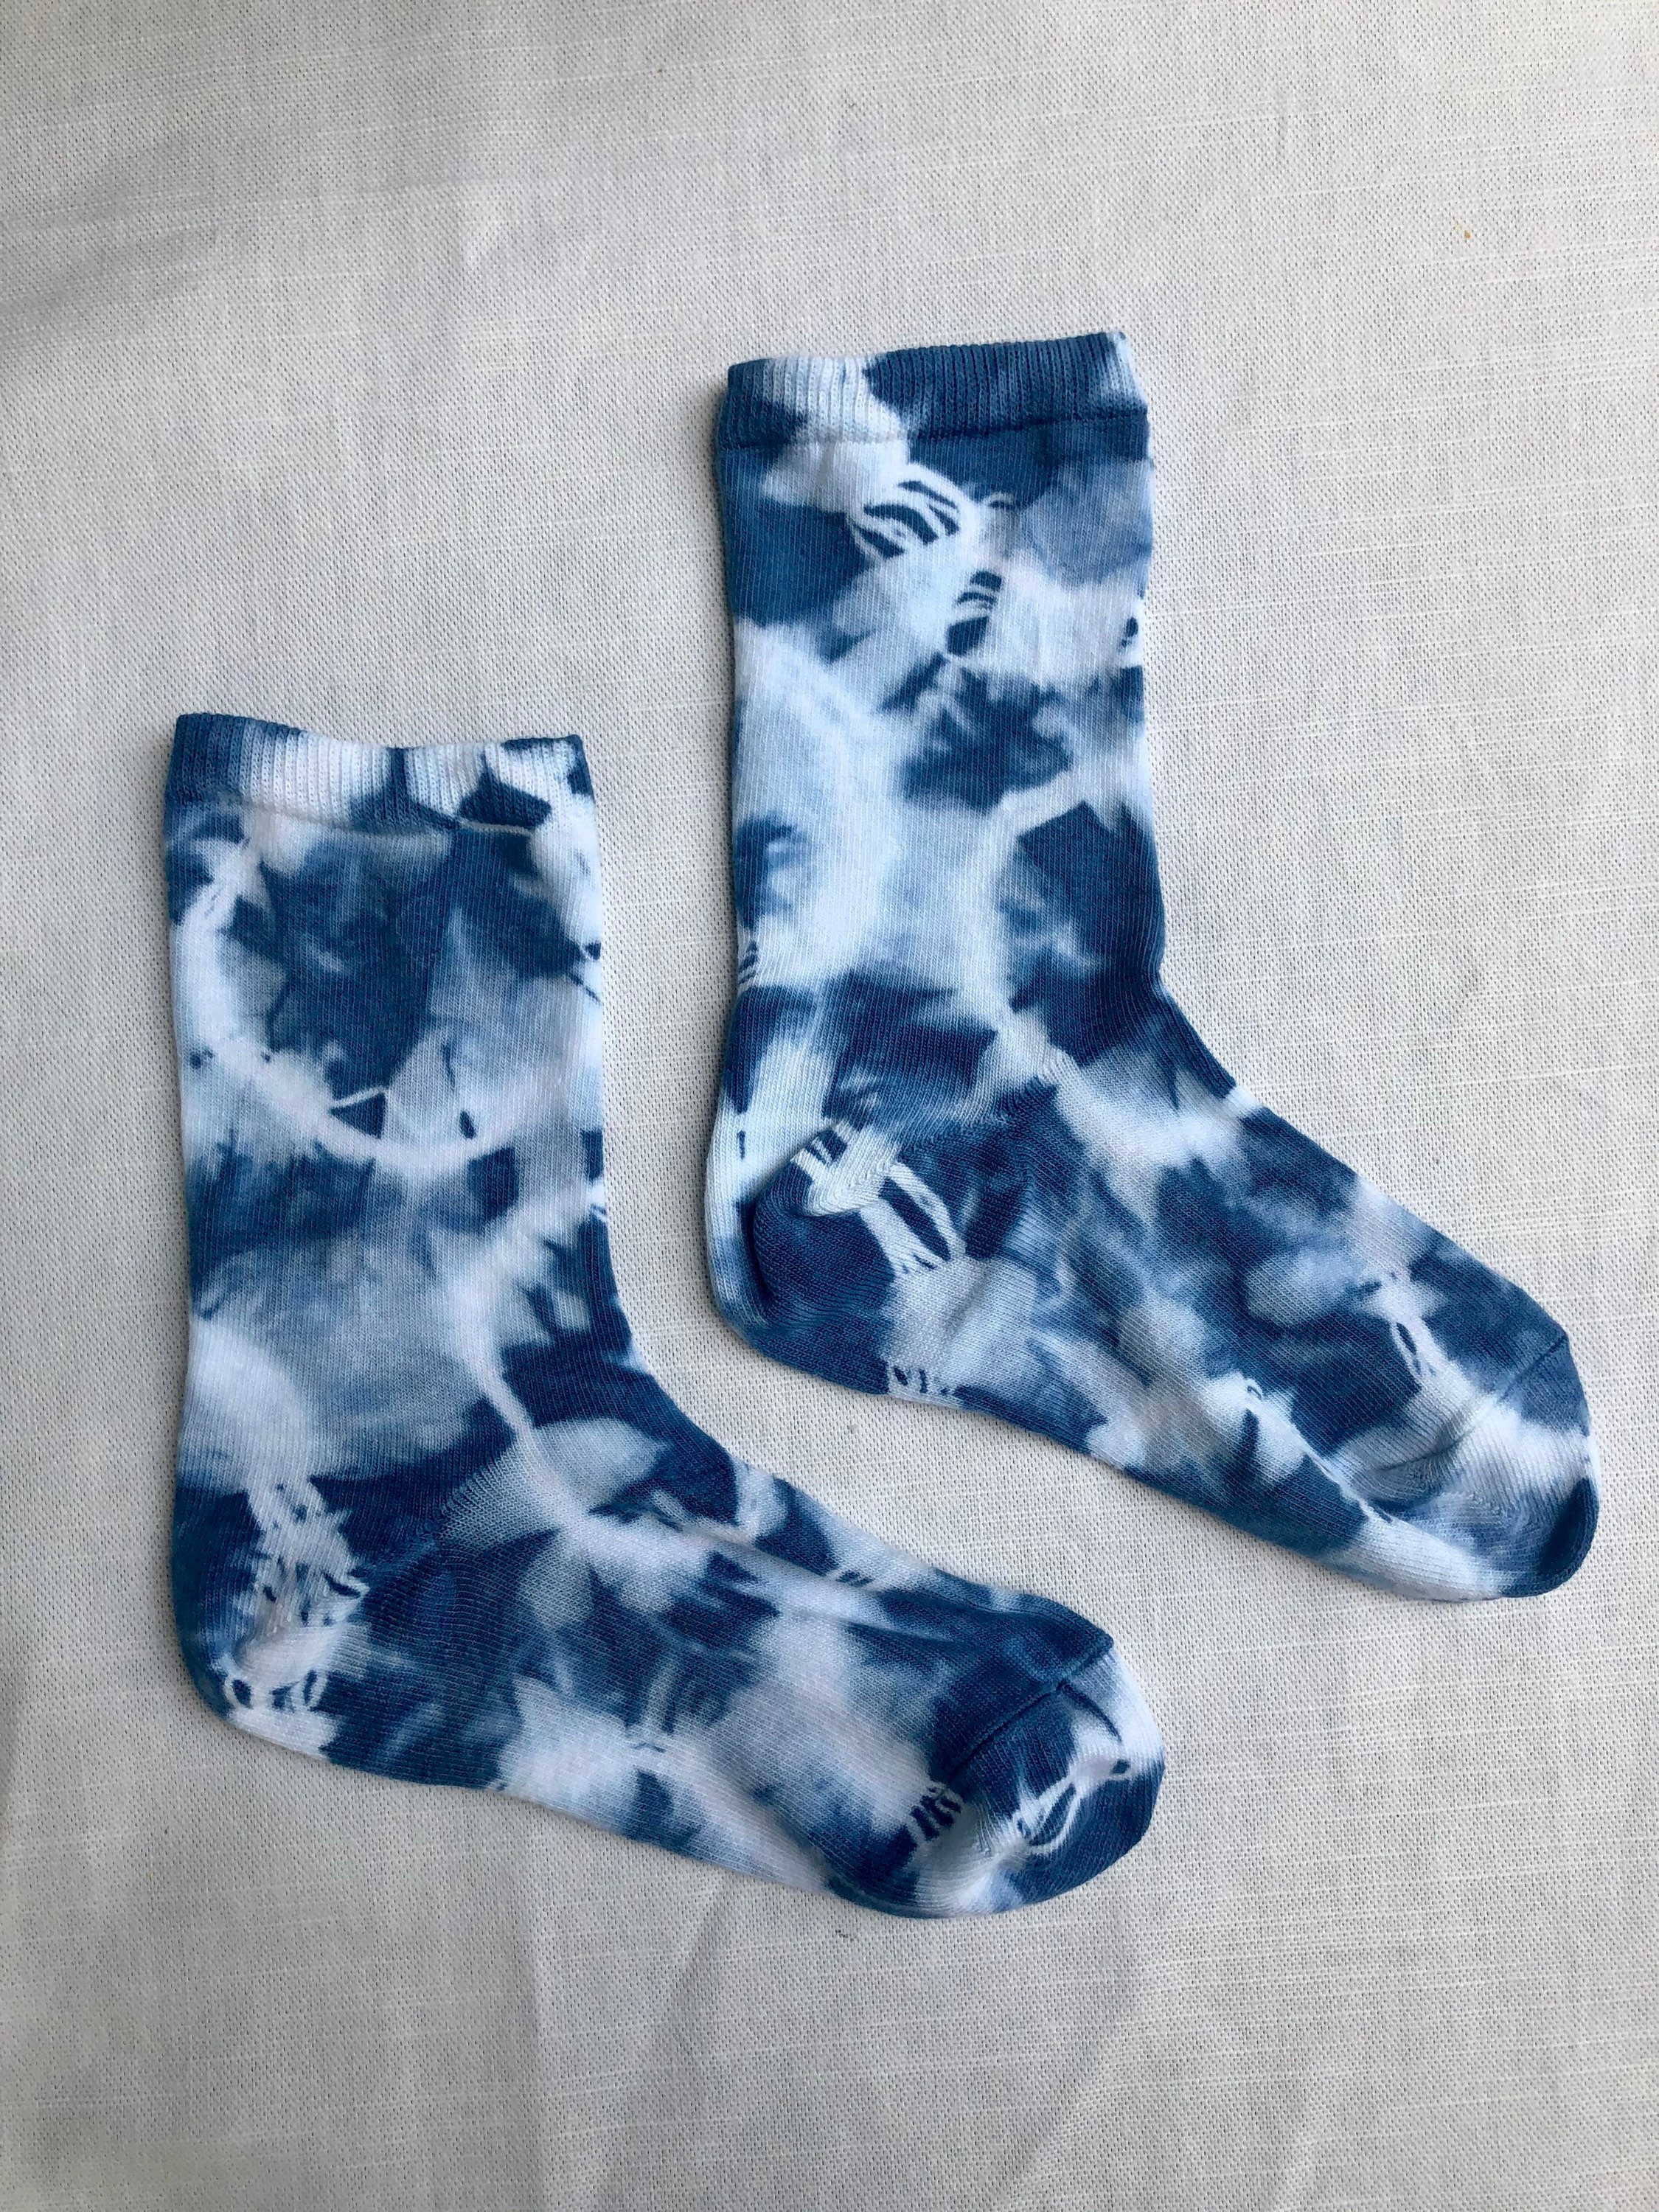 Shibori Tie Dye Organic Cotton Socks Womens Size 35 39 | Etsy